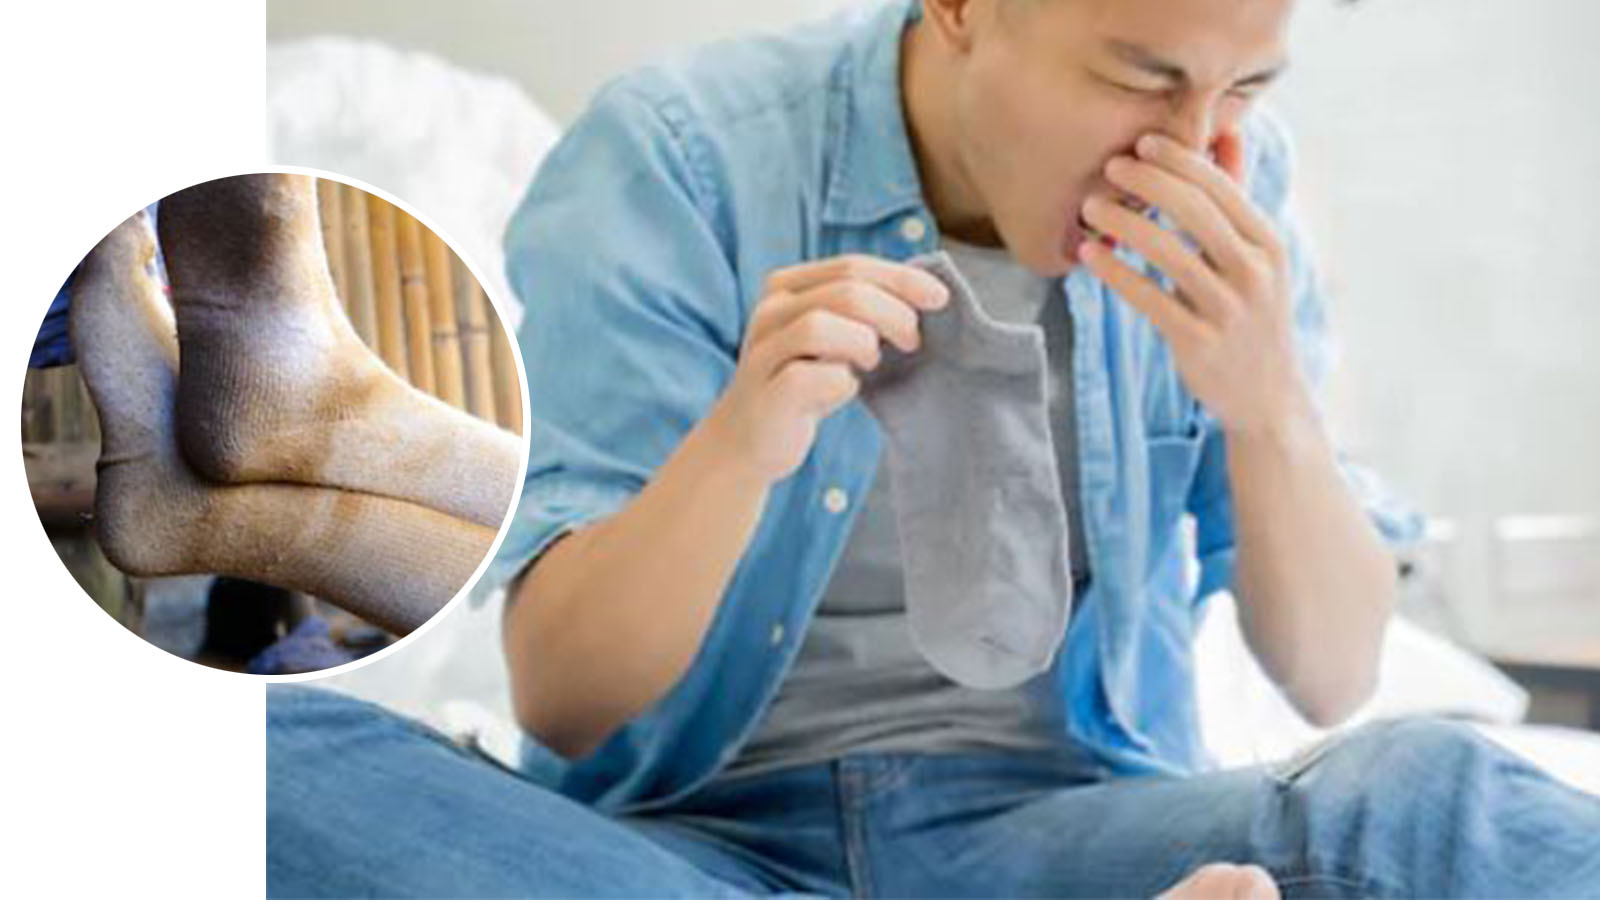 【坏习惯】爸爸持续咳嗽一周求医 经常闻臭袜致肺部真菌感染